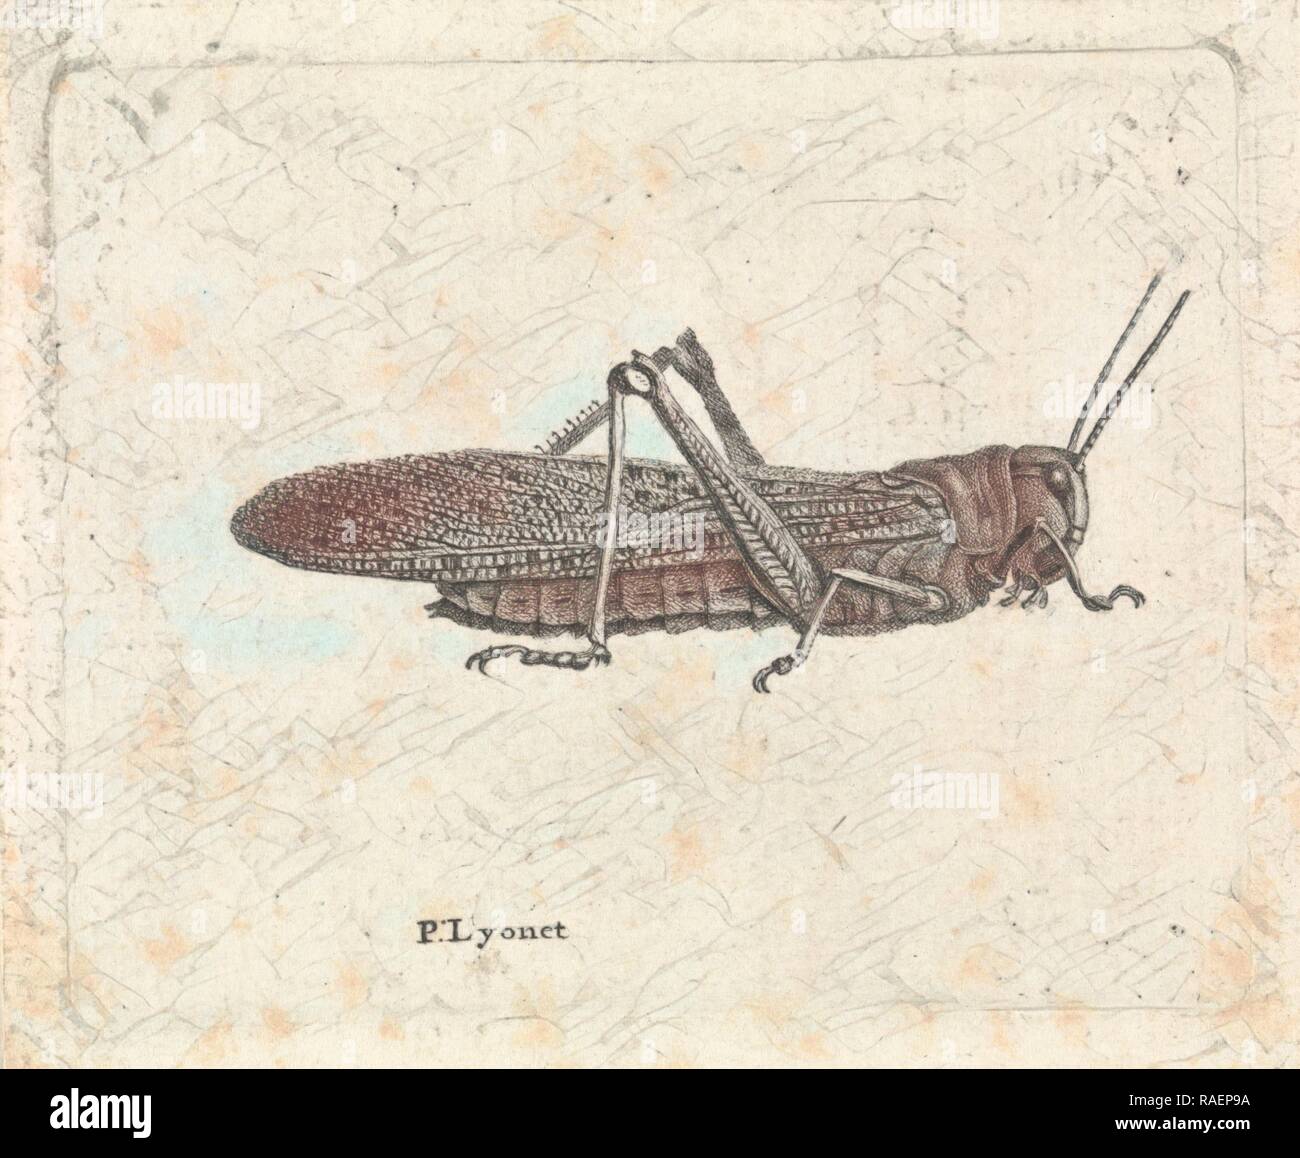 Grasshopper, Pieter Lyonet, 1716 - 178. Reinventato da Gibon. Arte Classica con un tocco di moderno reinventato Foto Stock